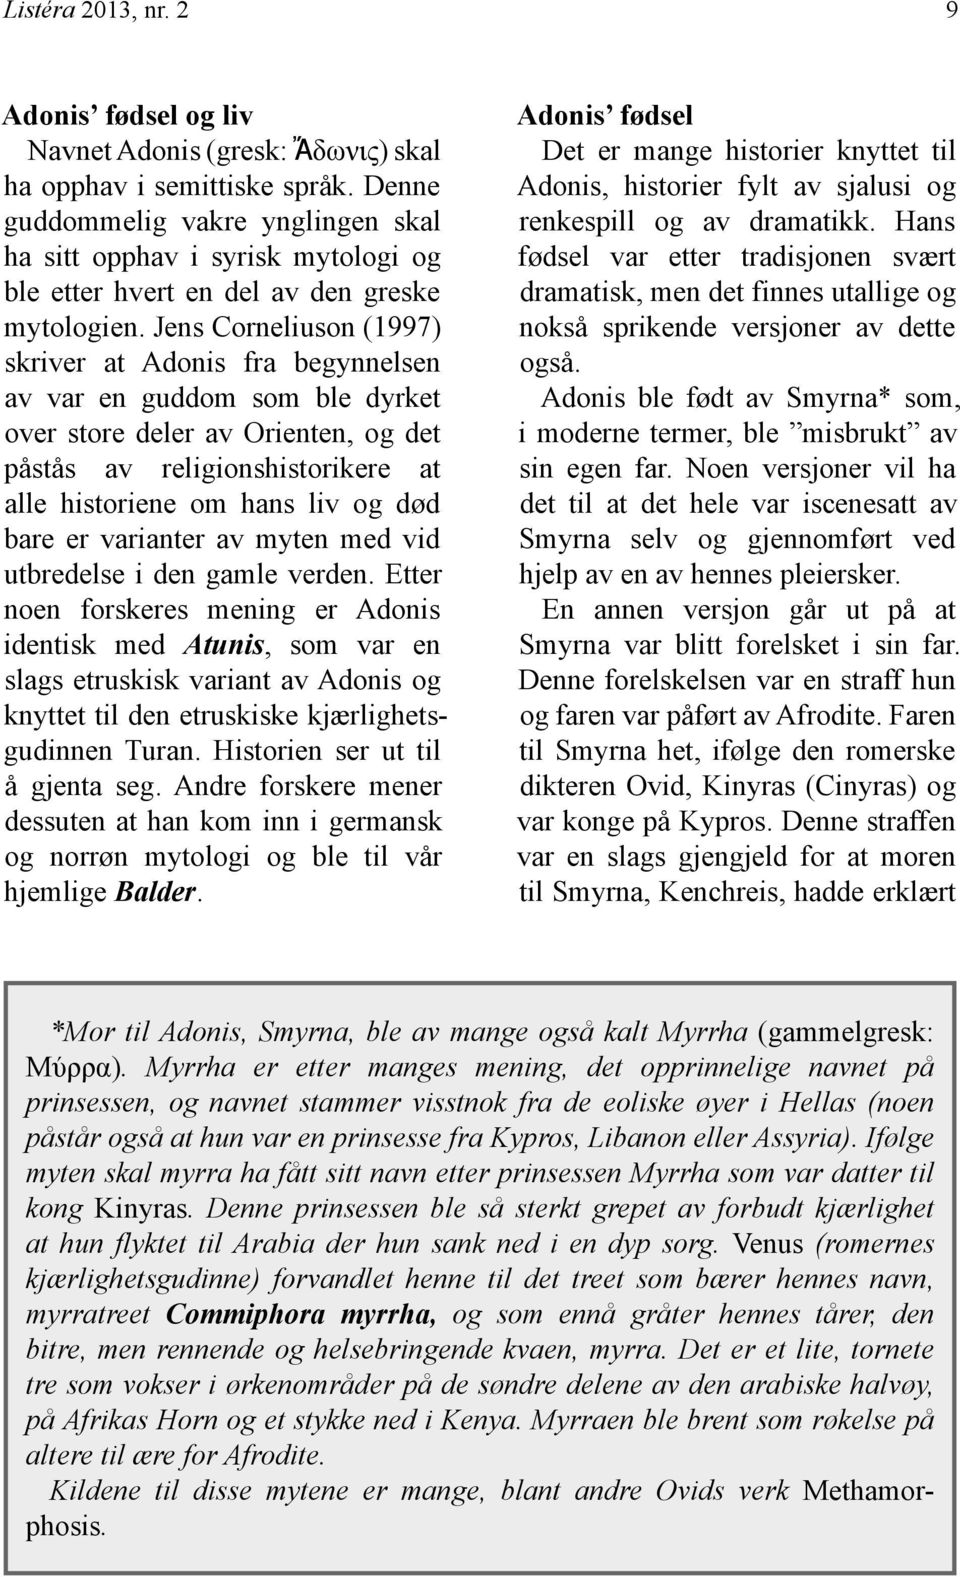 Jens Corneliuson (1997) skriver at Adonis fra begynnelsen av var en guddom som ble dyrket over store deler av Orienten, og det påstås av religionshistorikere at alle historiene om hans liv og død